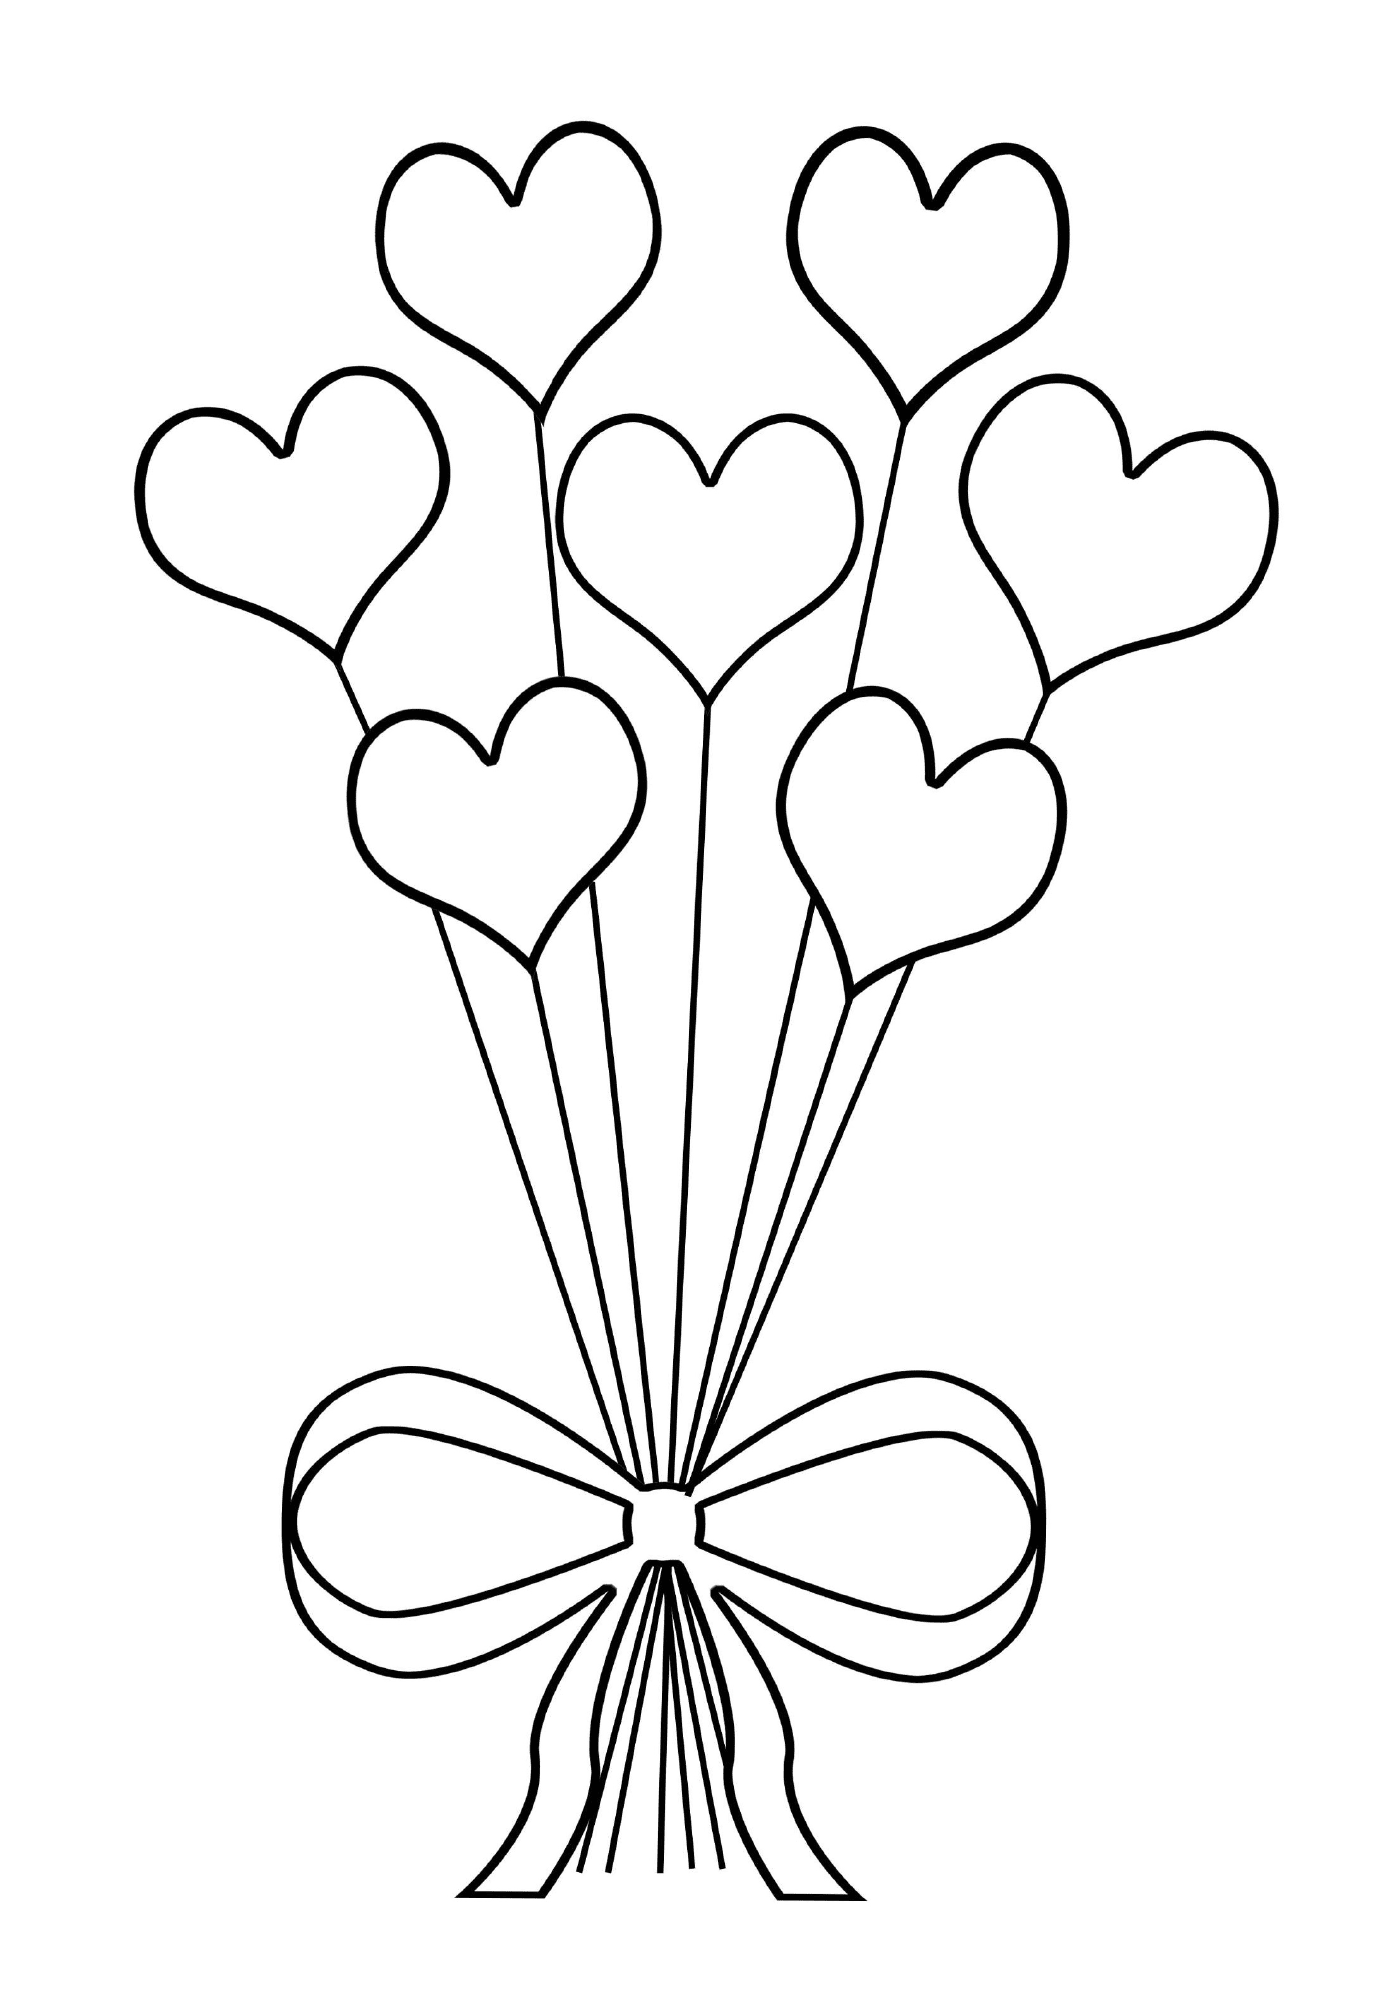  Un mazzo originale di fiori a forma di cuore 